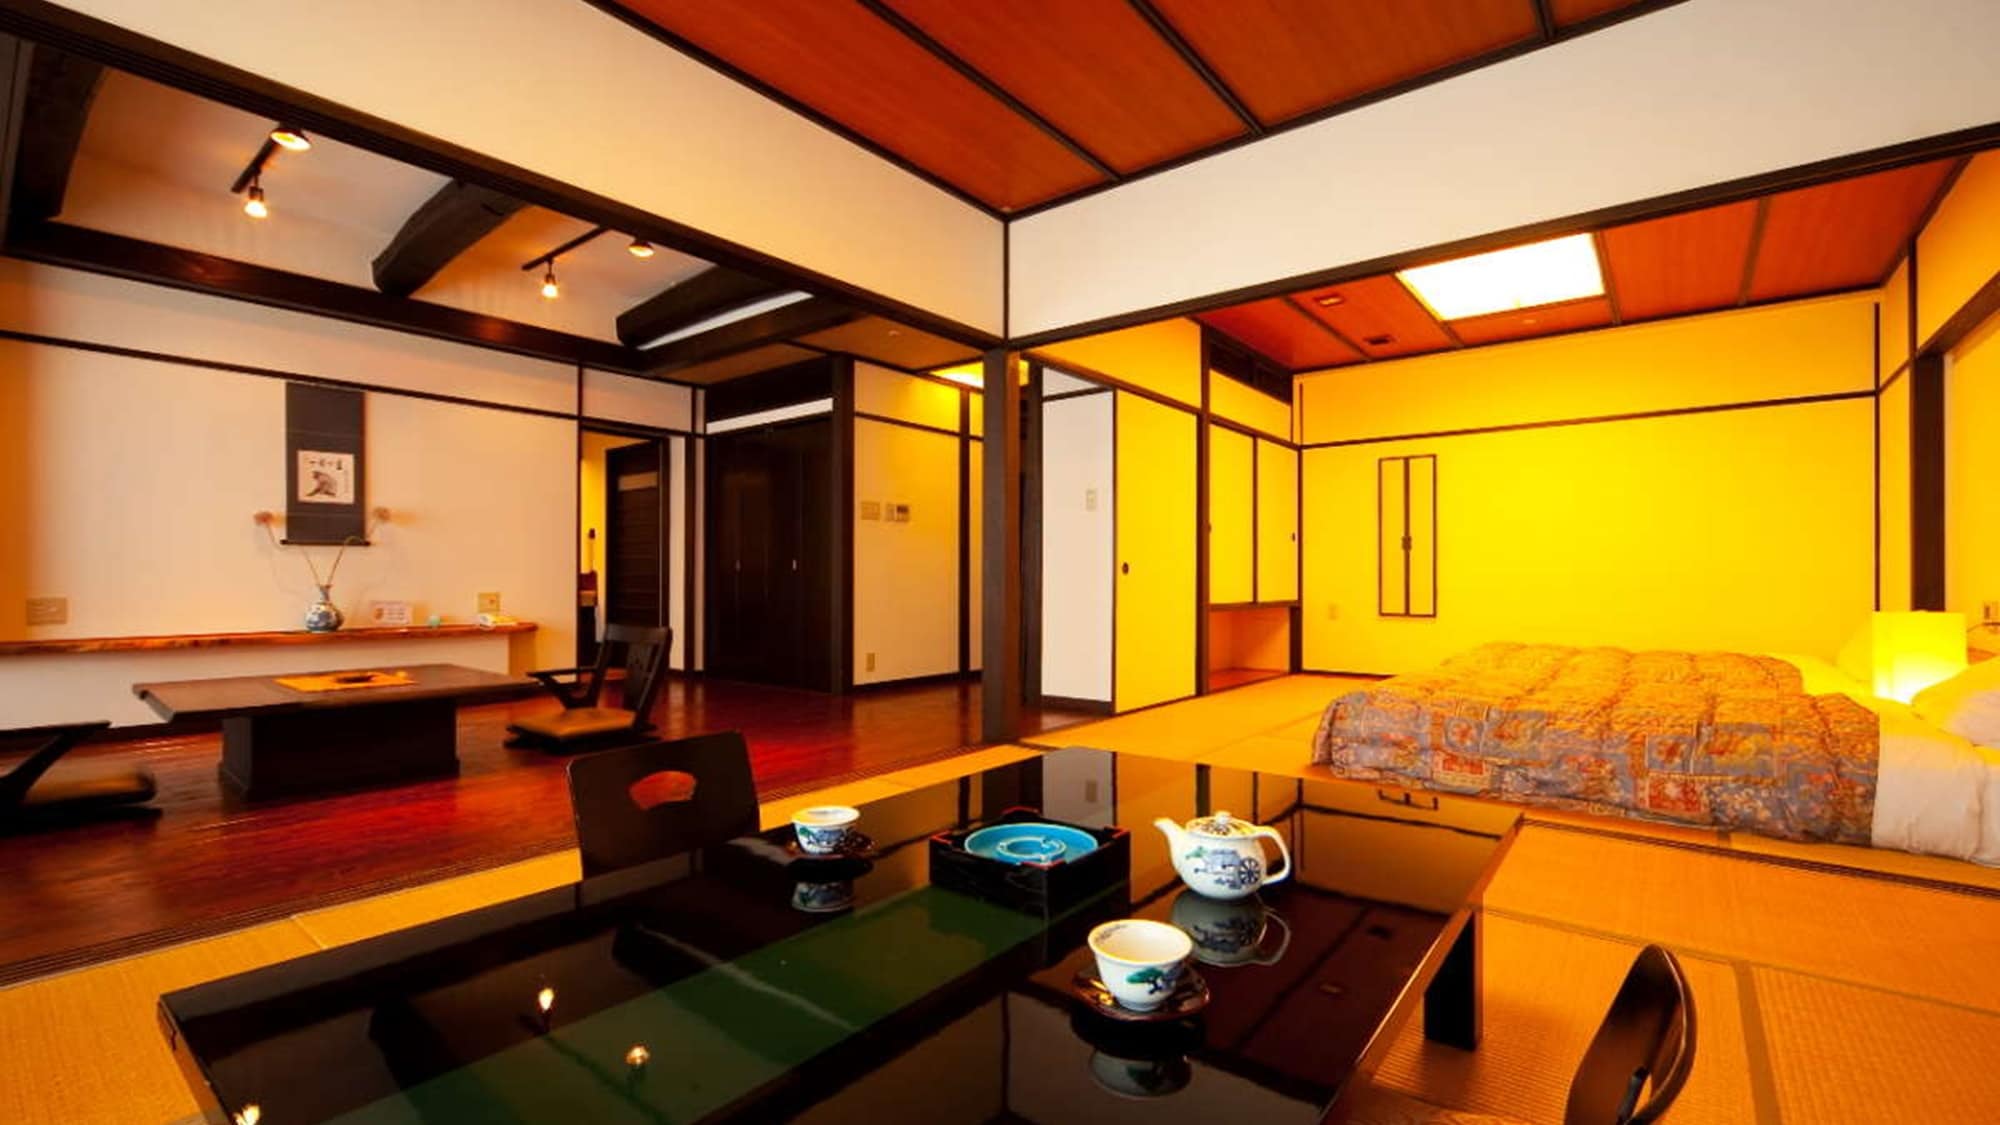 ห้องสไตล์ญี่ปุ่น-ตะวันตกพร้อมอ่างอาบน้ำไซเปรส "คิเคียว" / 2 ห้องพร้อมห้องนั่งเล่นและห้องสไตล์ญี่ปุ่นประมาณ 20 ตร.ม.